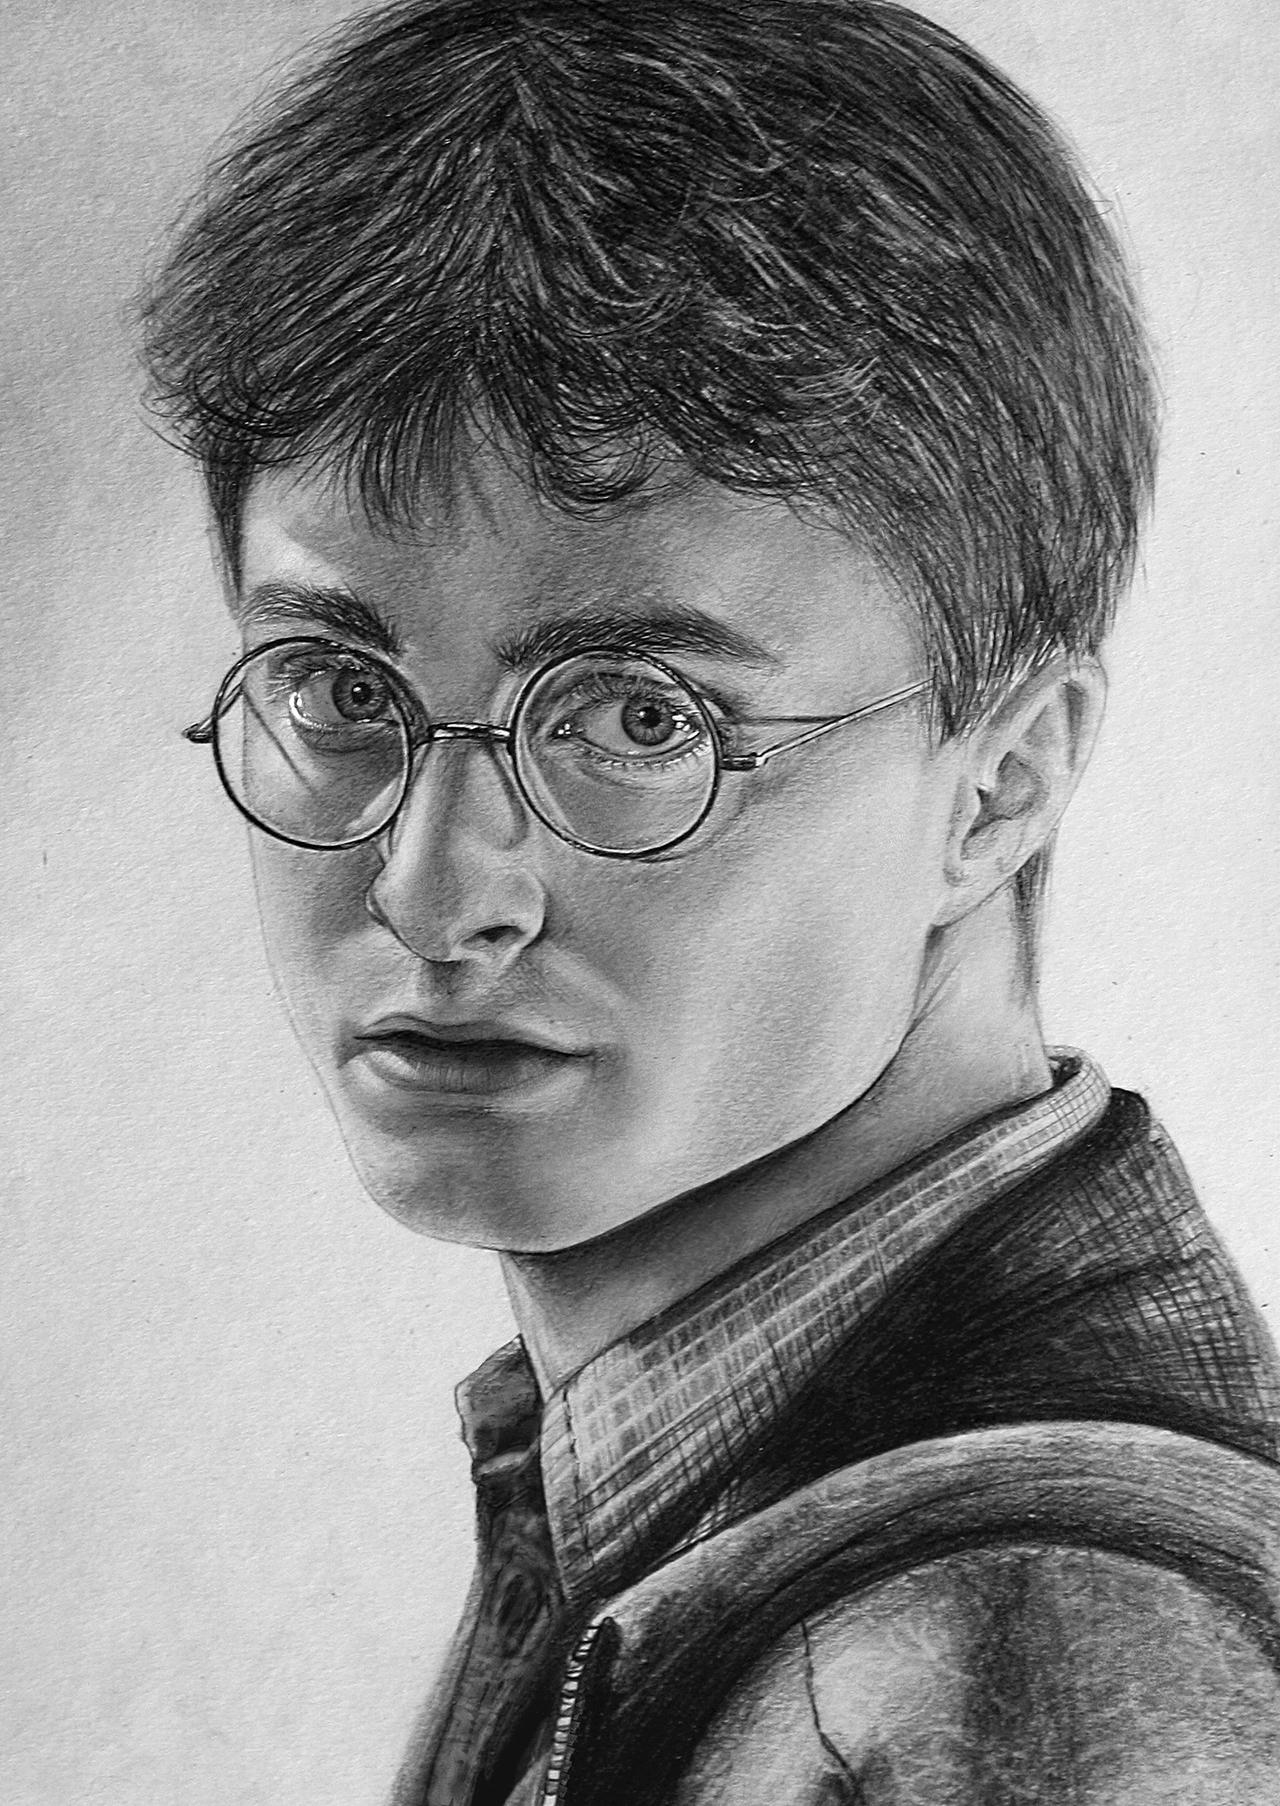 Harry Potter by LazzzyV on DeviantArt